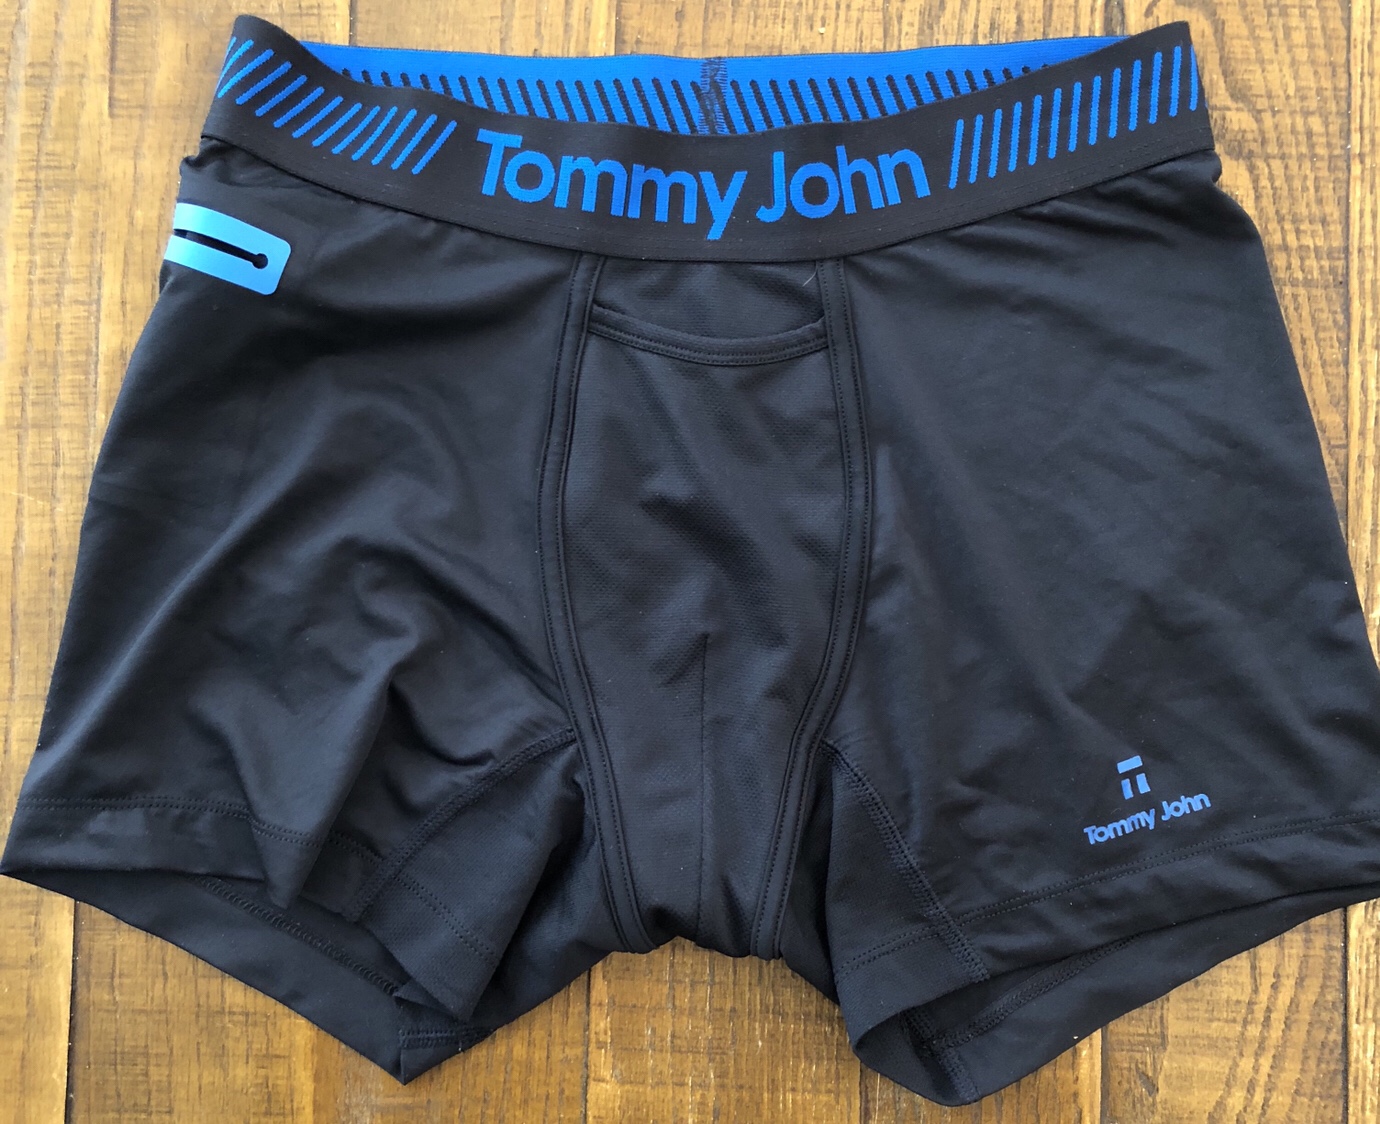 reviews of tommy john underwear